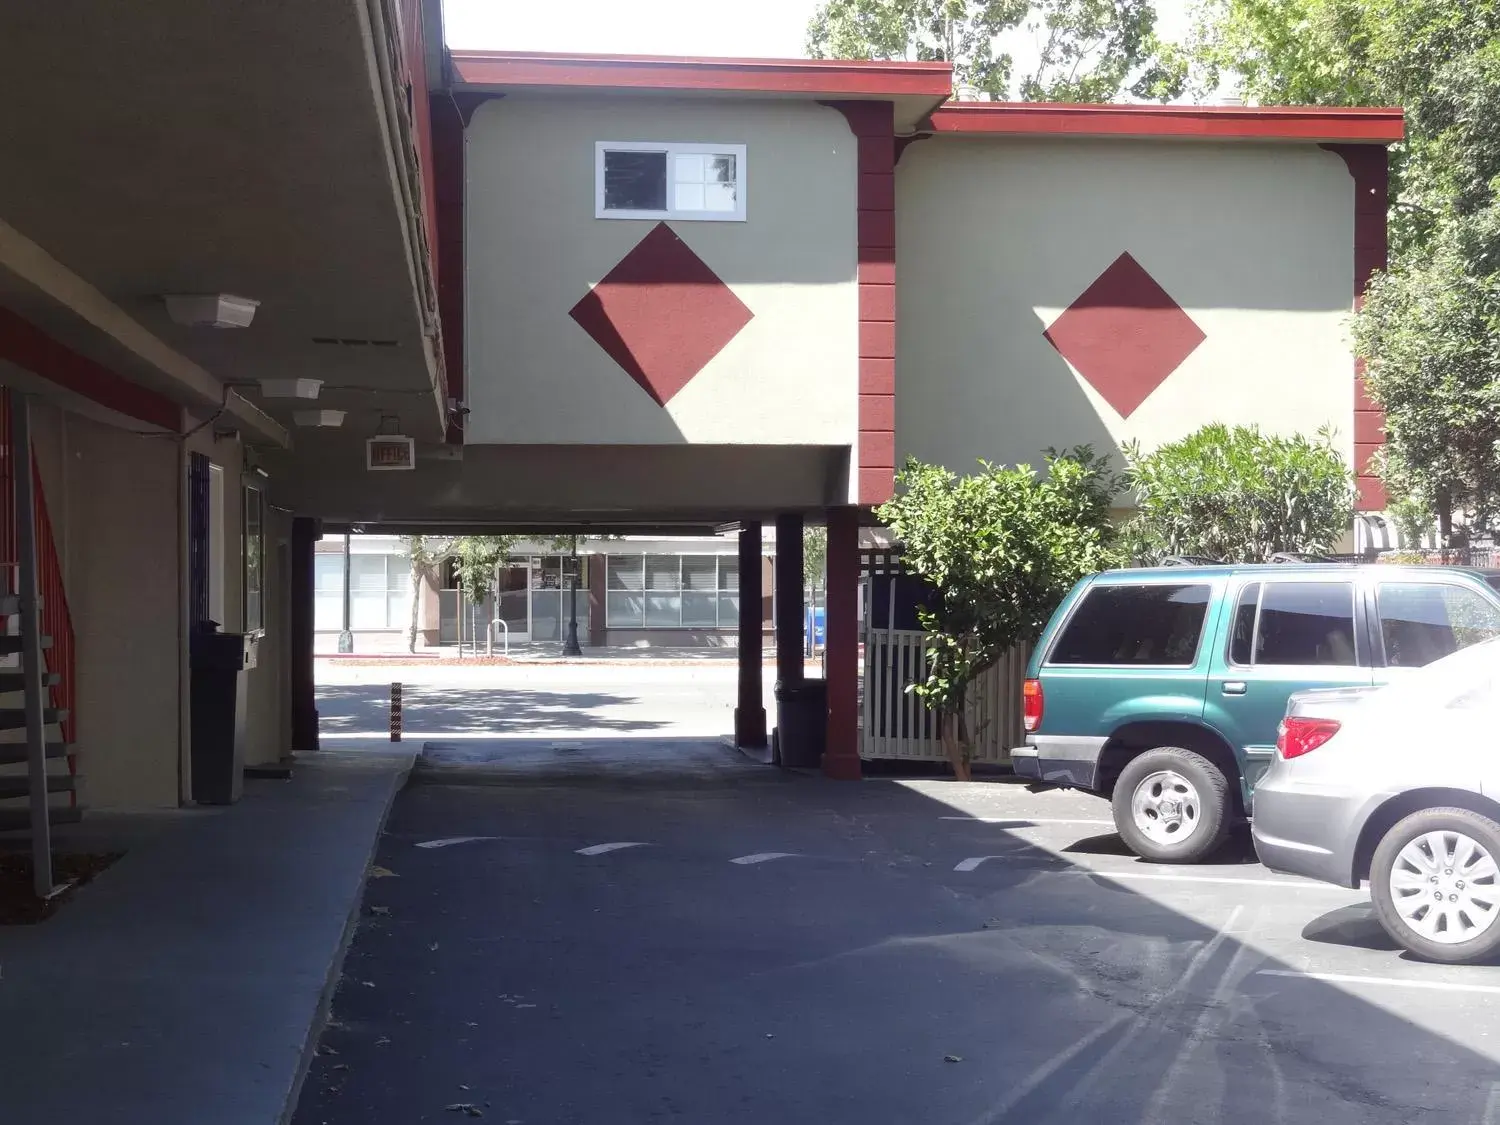 Property building, Facade/Entrance in The Flamingo Motel San Jose